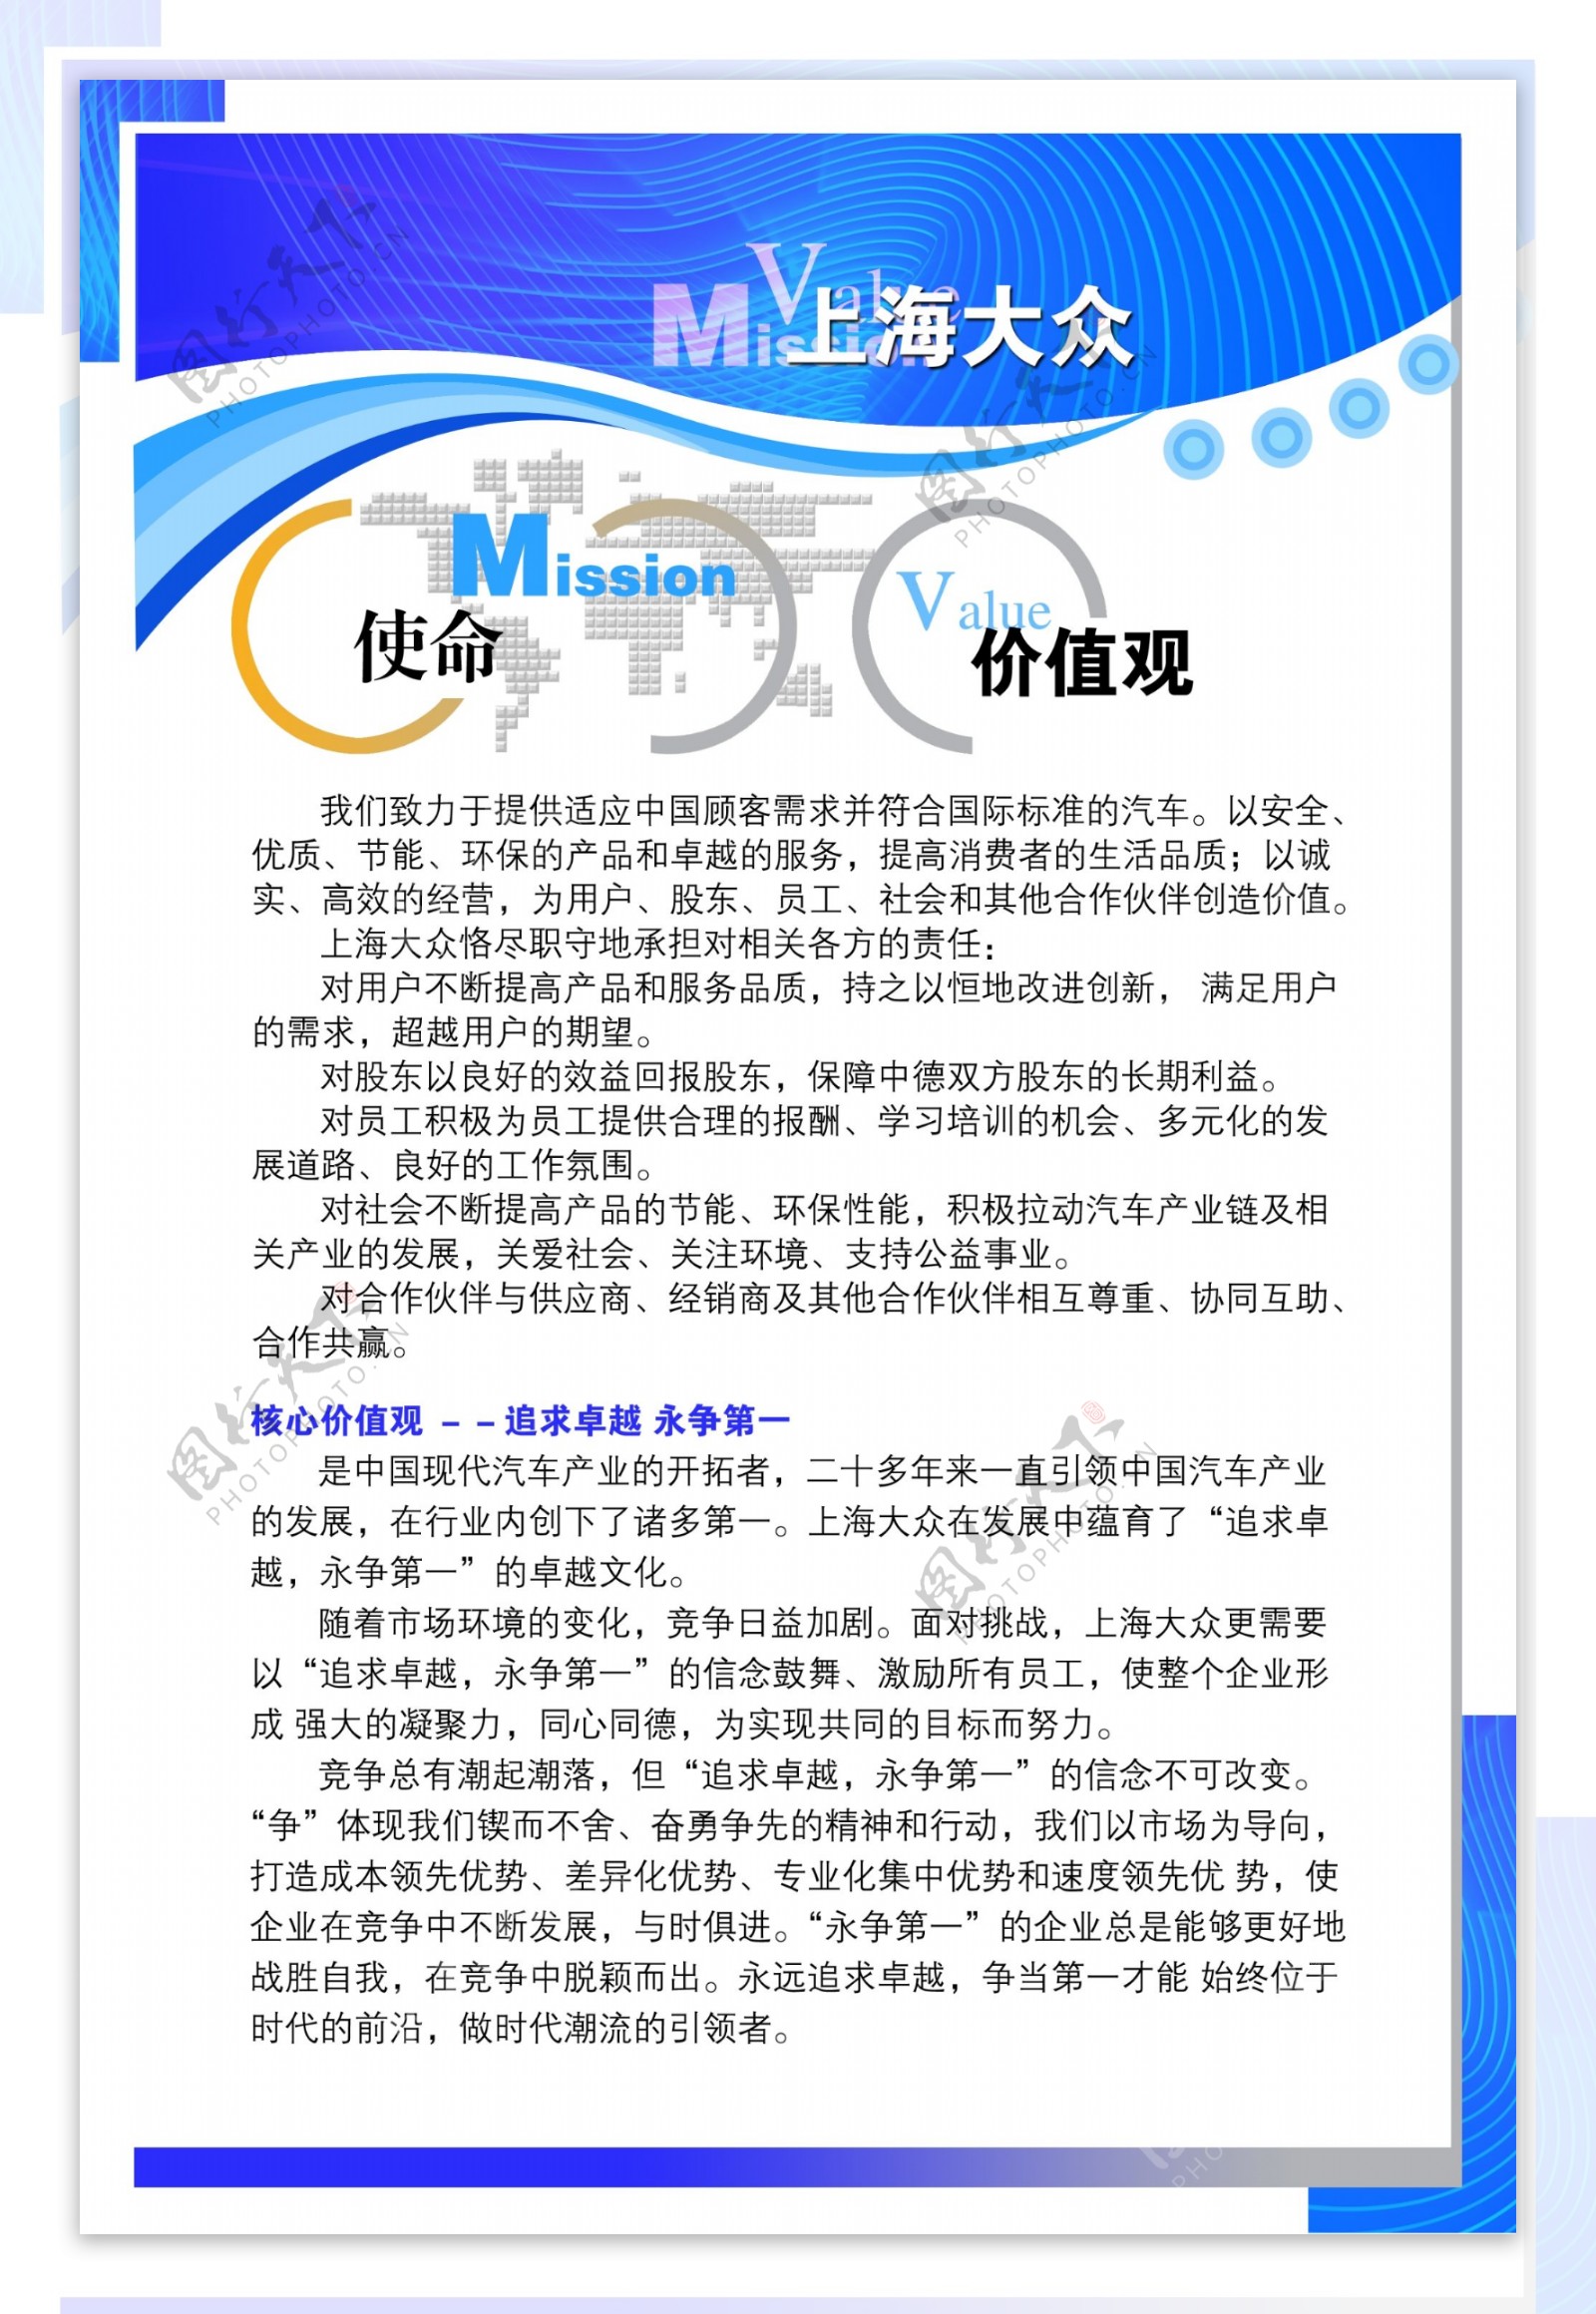 上海大众企业文化制度模板分层素材psd格式0035